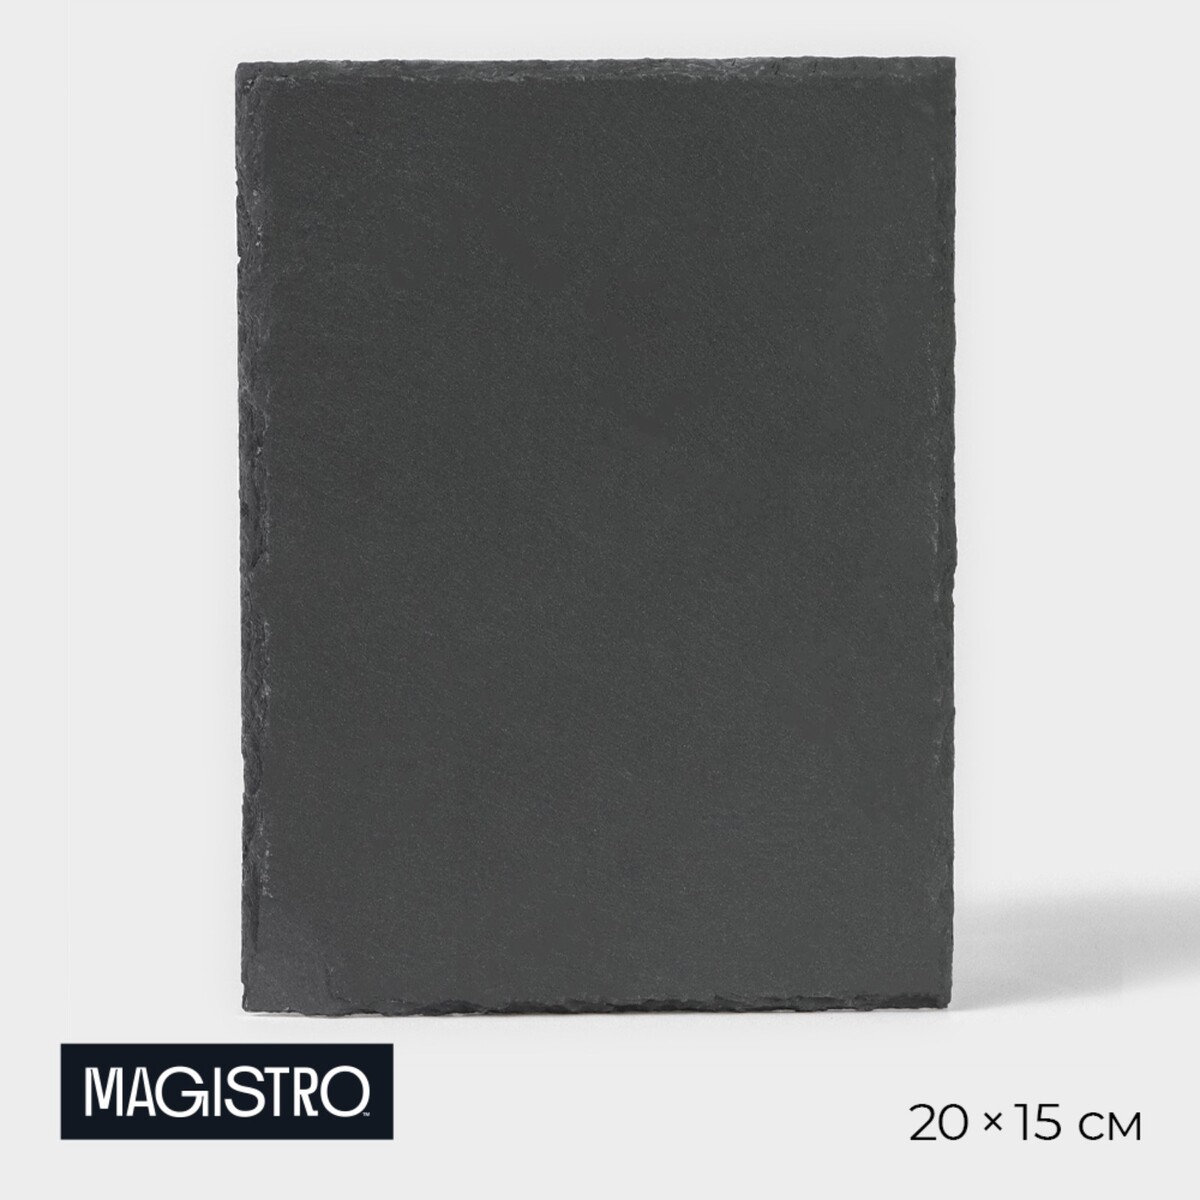 Доска для подачи из сланца magistro valley, 20×15 см доска для подачи из сланца magistro valley 20×40 см